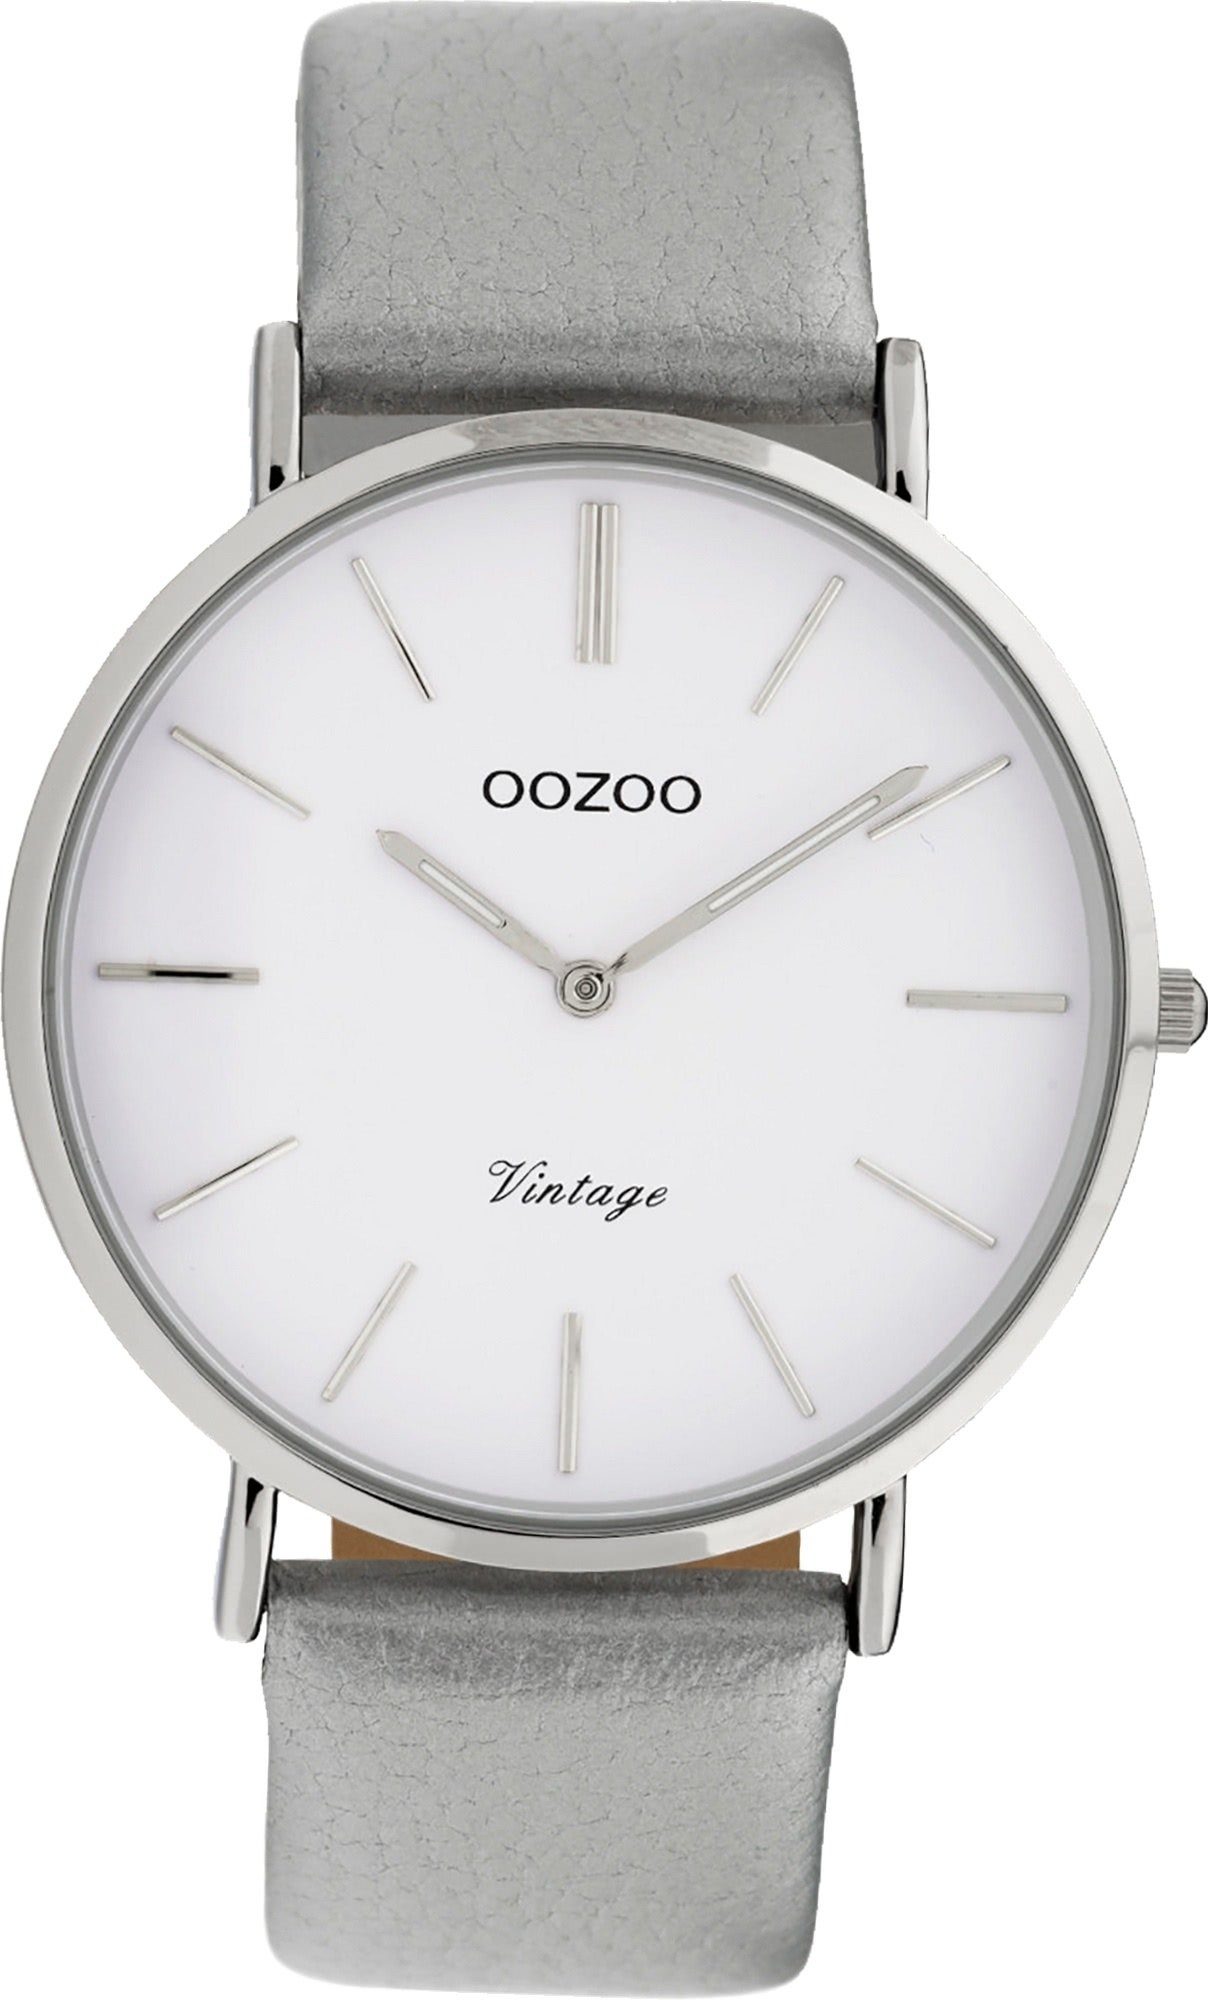 OOZOO Quarzuhr Oozoo Leder Damen Uhr C9960 Analog, Damenuhr Lederarmband grau, rundes Gehäuse, groß (ca. 40mm)